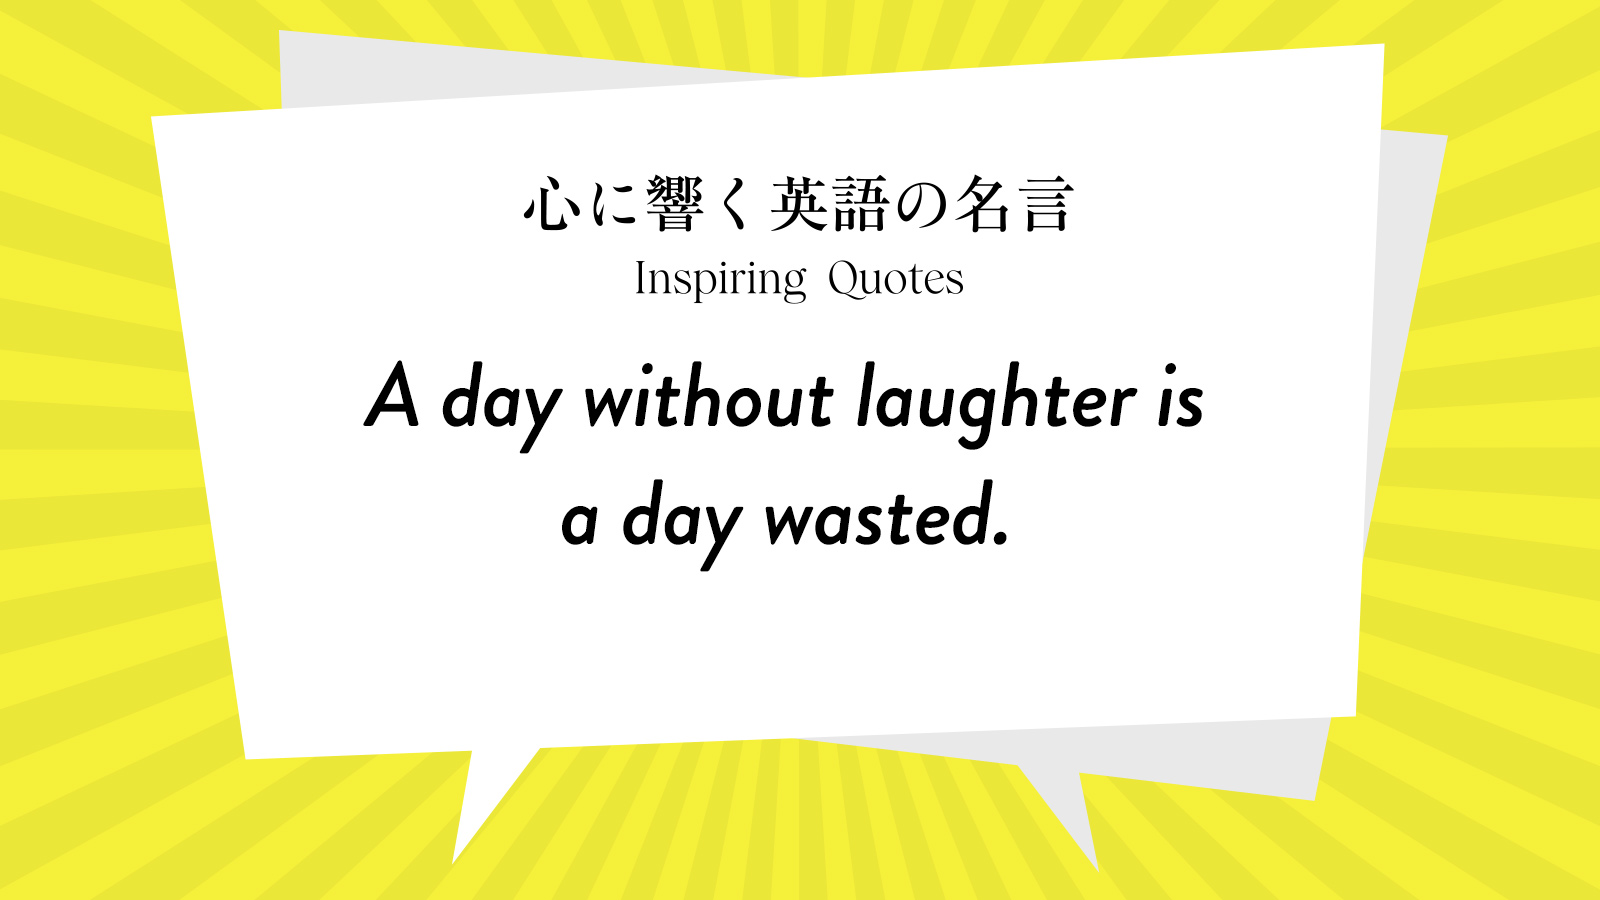 今週の名言 “A day without laughter is a day wasted.” | Inspiring Quotes: 心に響く英語の名言